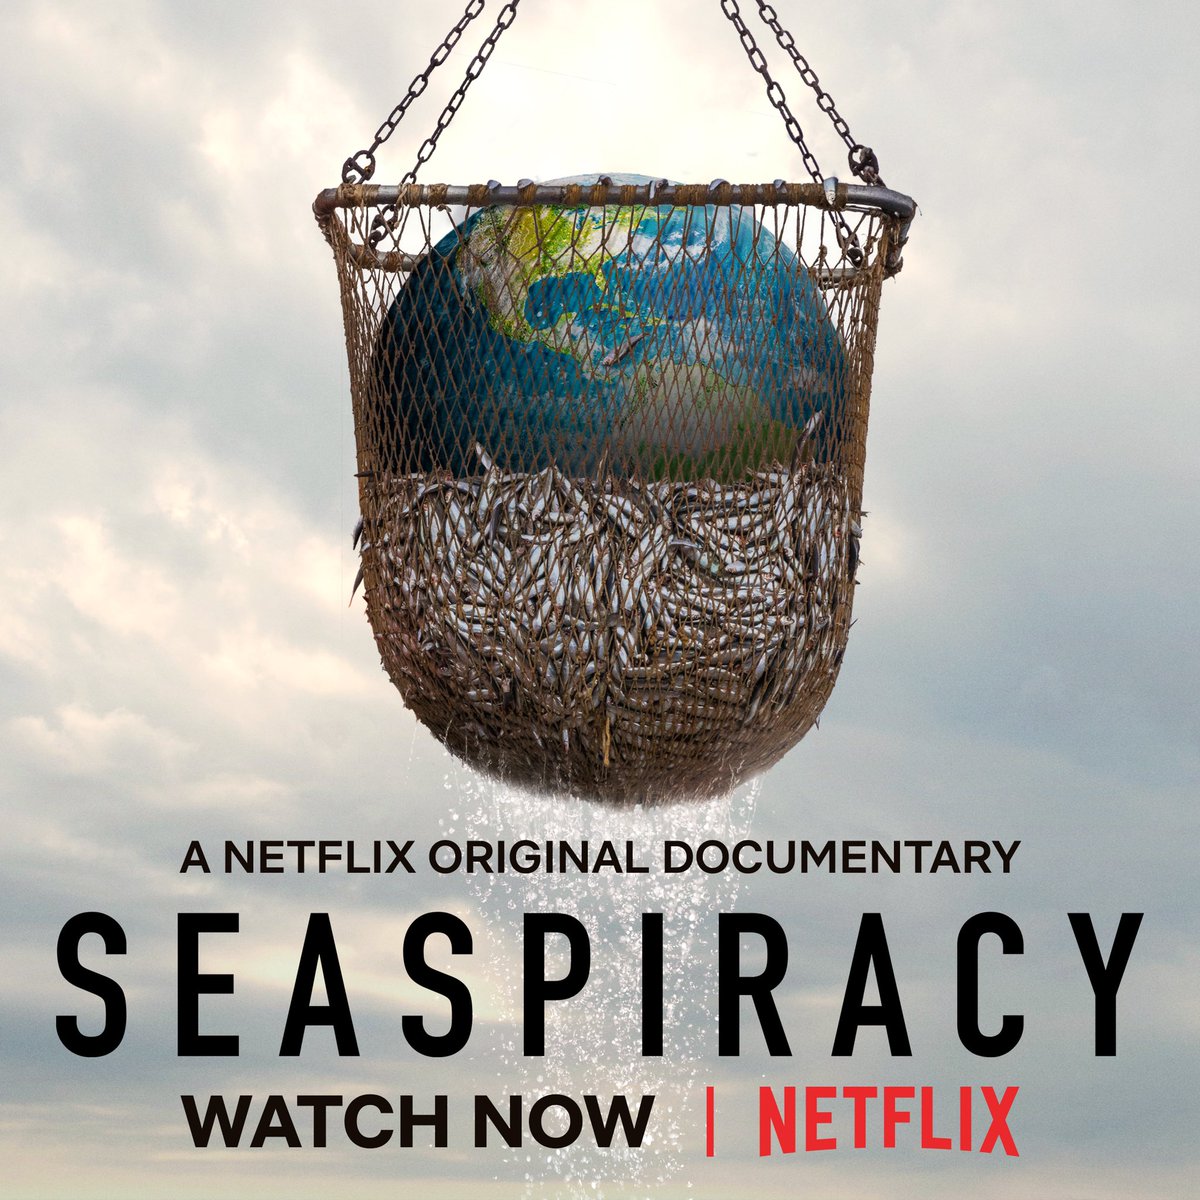 ดูหนังออนไลน์ SEASPIRACY (2021) ใครทำร้ายทะเล